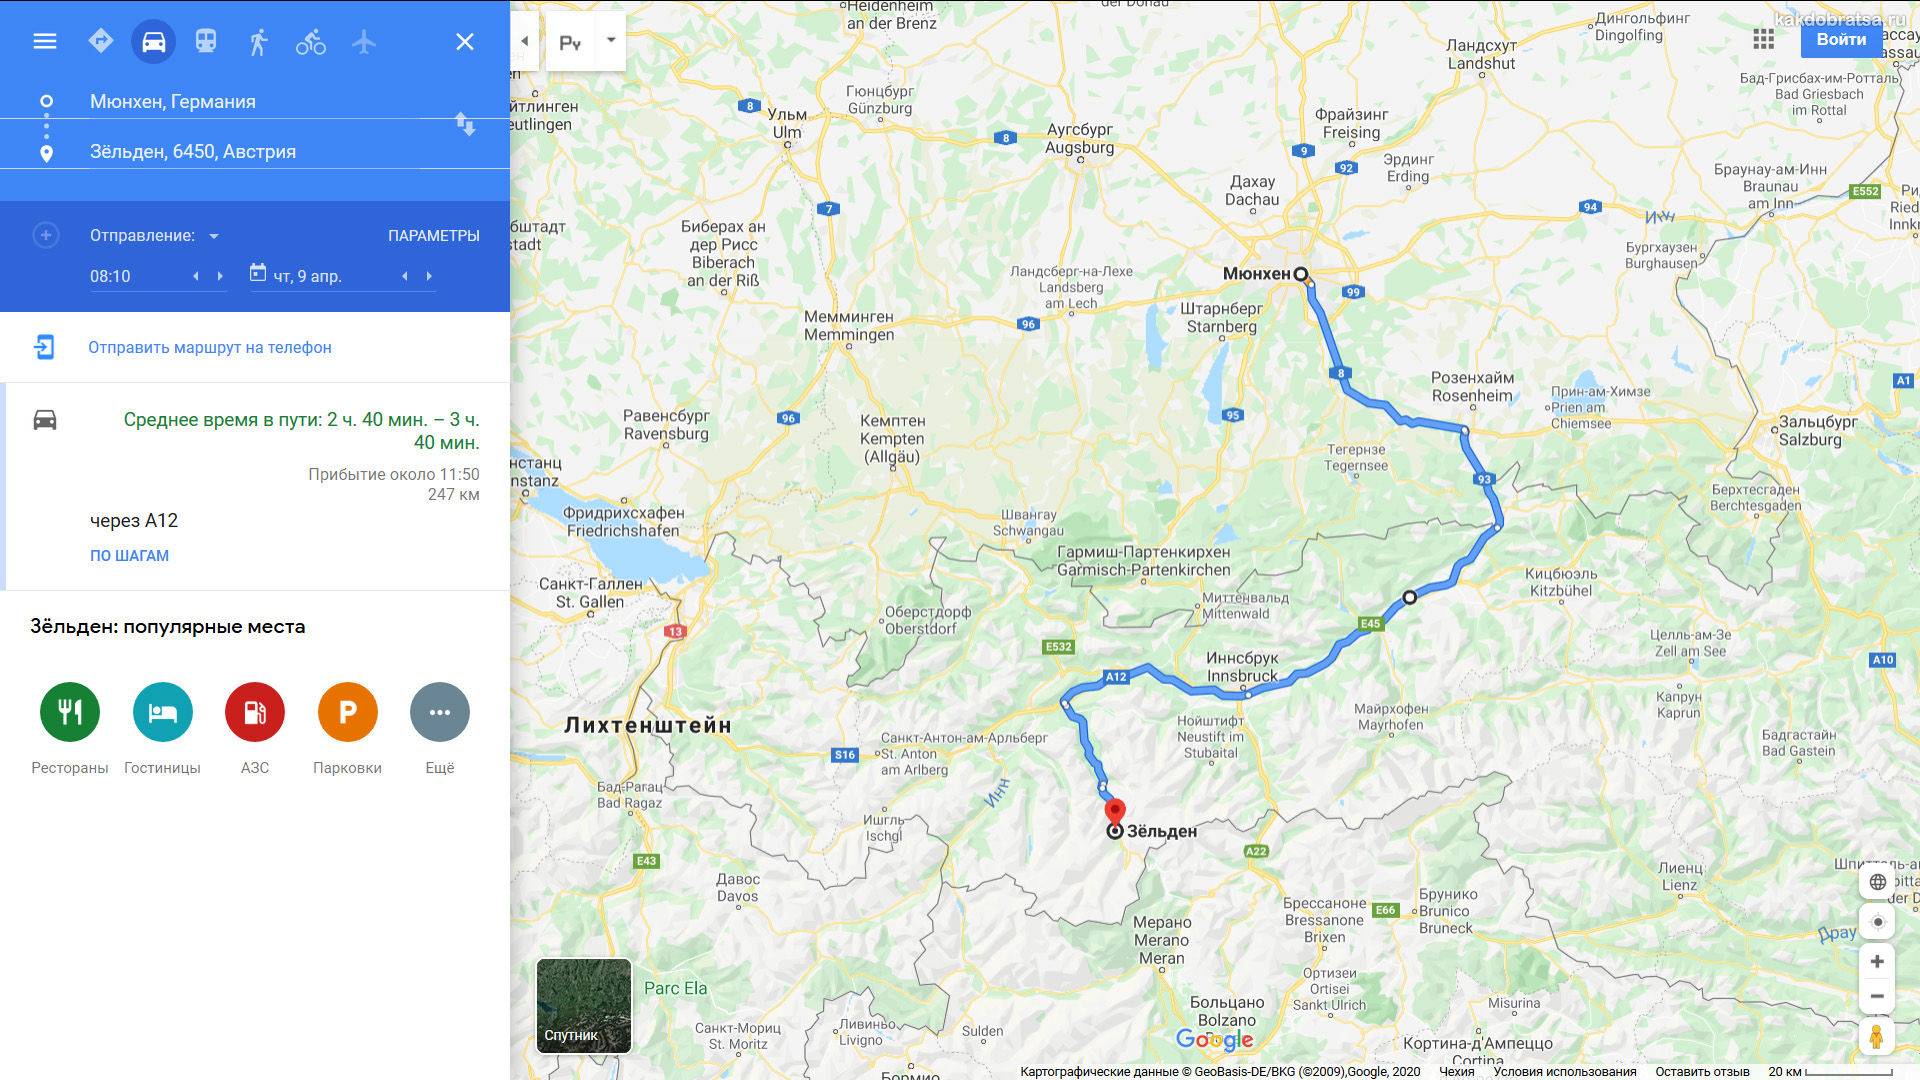 Как добраться из мюнхена в зальцбург: поезд, автобус, такси, машина. расстояние, цены на билеты и расписание 2021 на туристер.ру